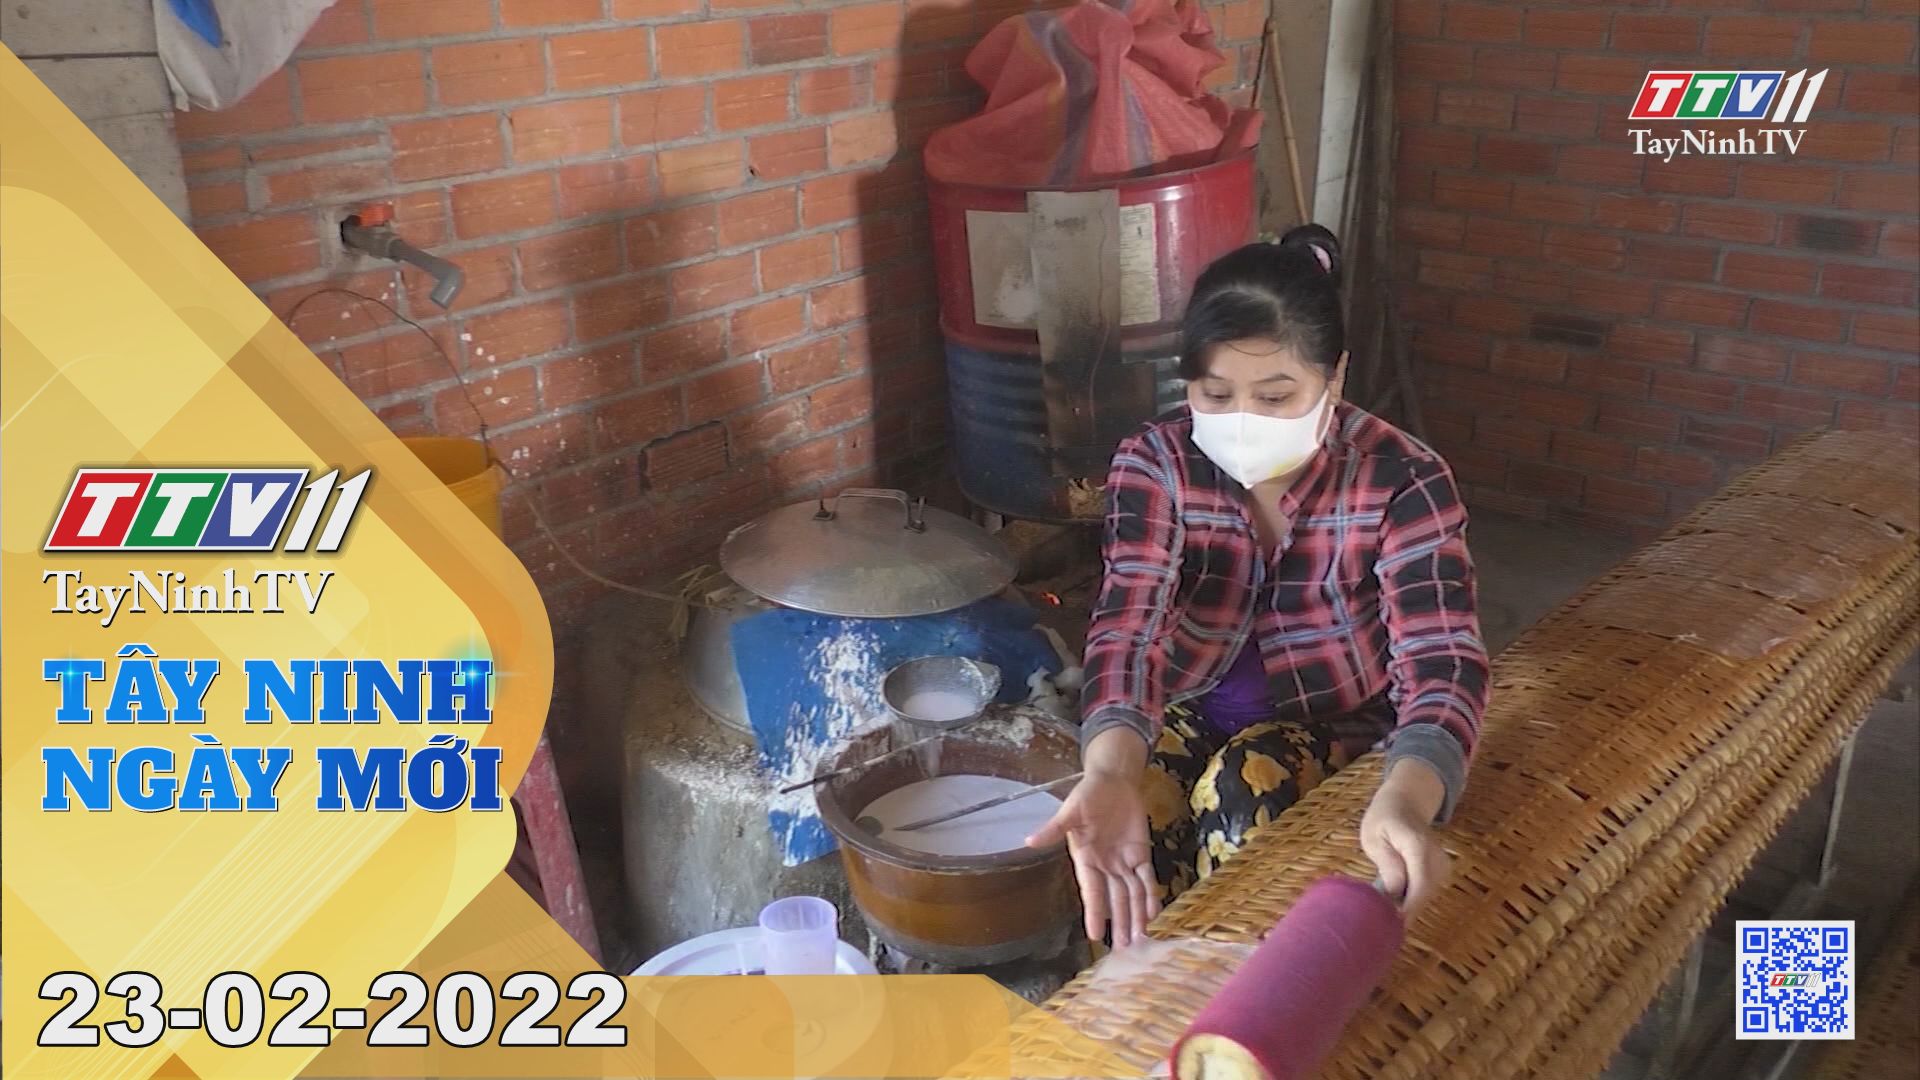 Tây Ninh ngày mới 23-02-2022 | Tin tức hôm nay | TayNinhTV